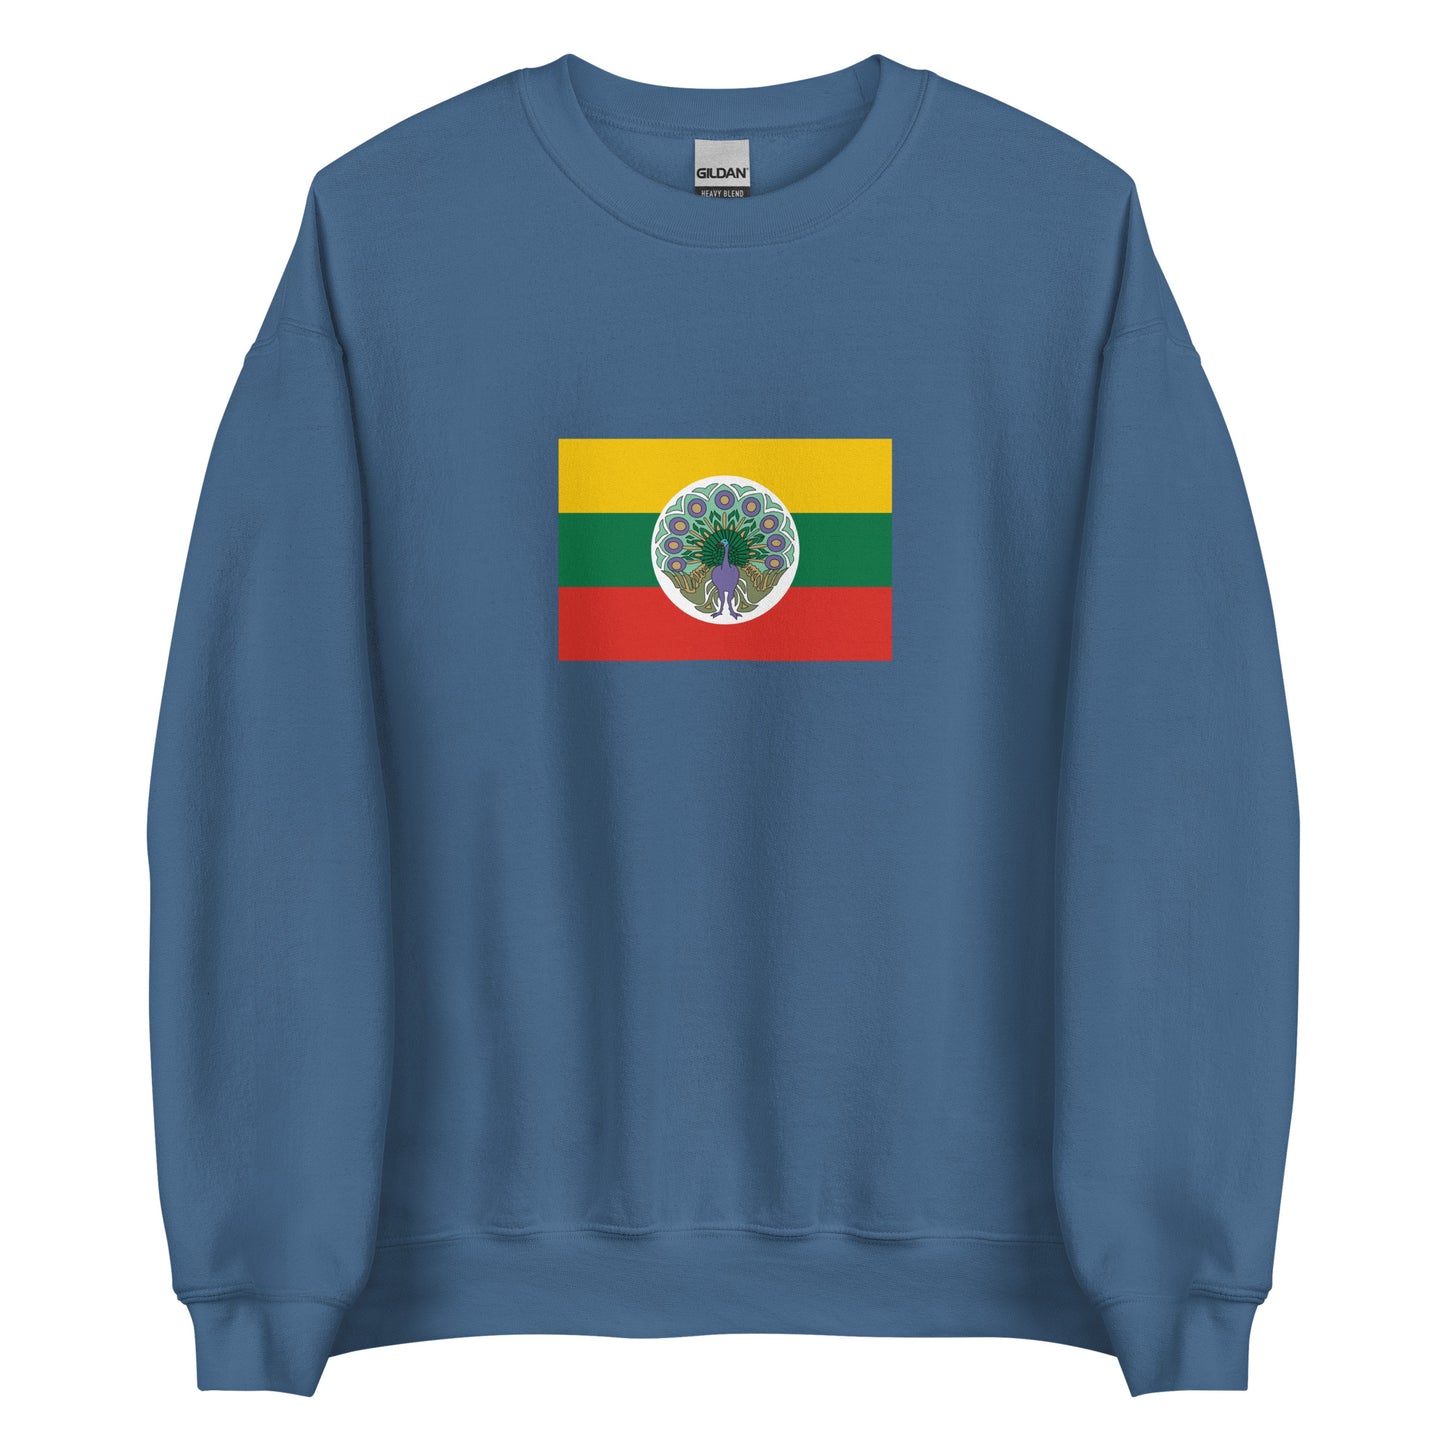 Myanmar (Burma) - State of Burma (1943 - 1945) | Historical Flag Unisex Sweatshirt